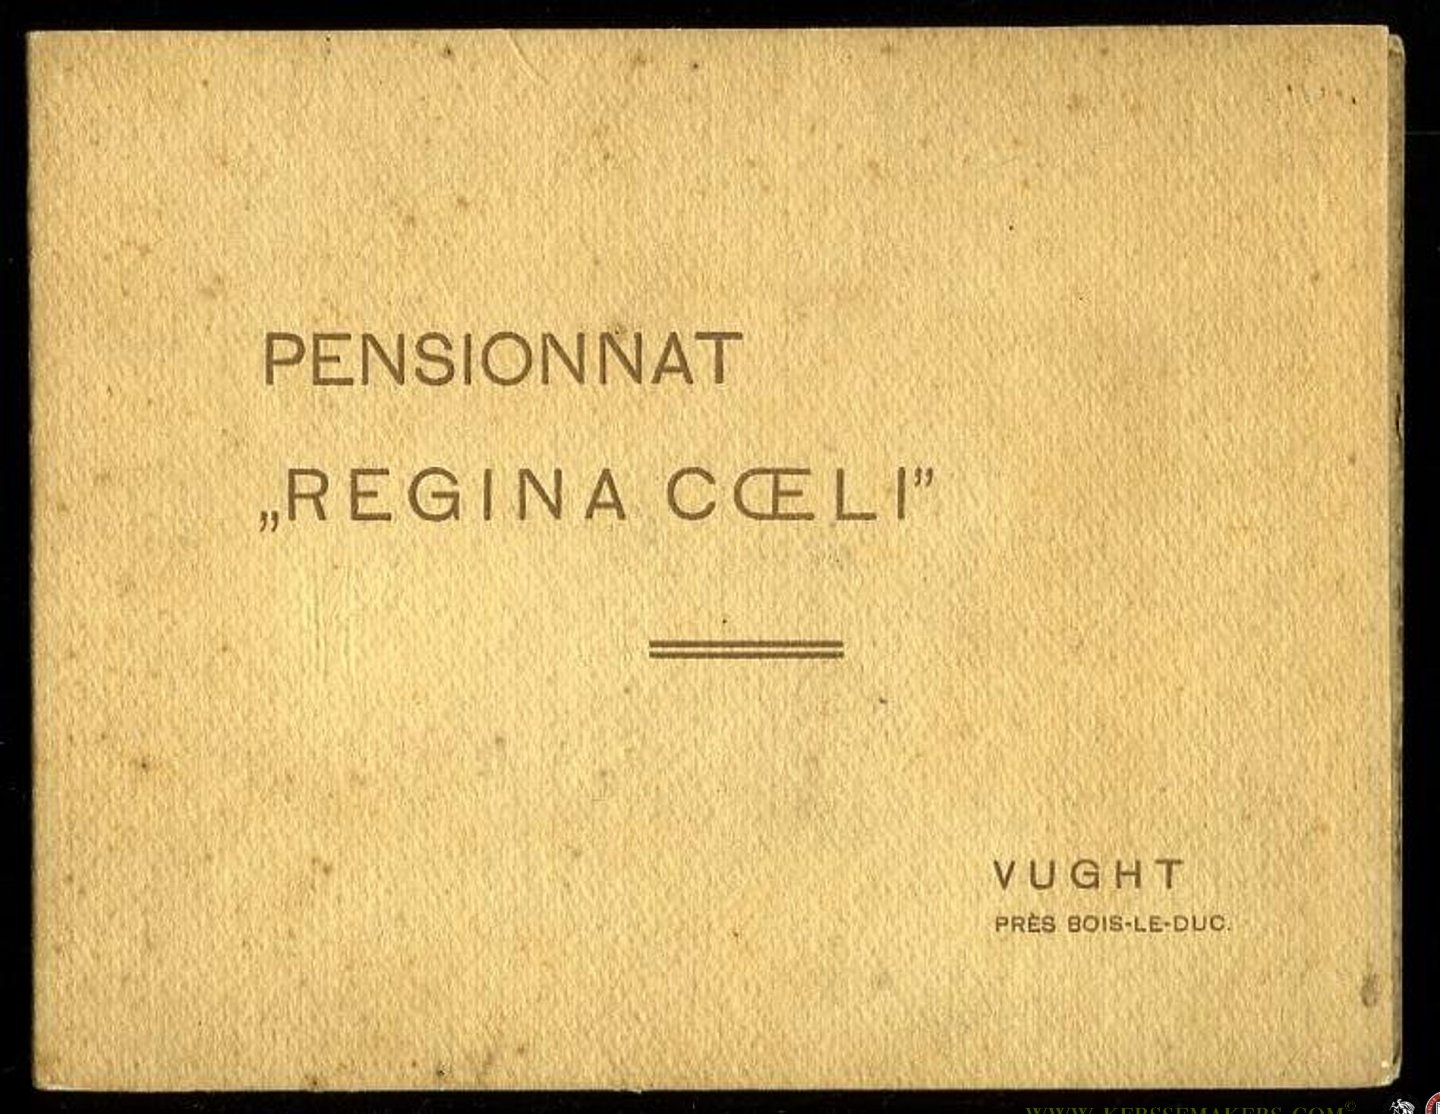 AA - Pensionnat Regina Coeli, Vught pres Bois-Le-Duc